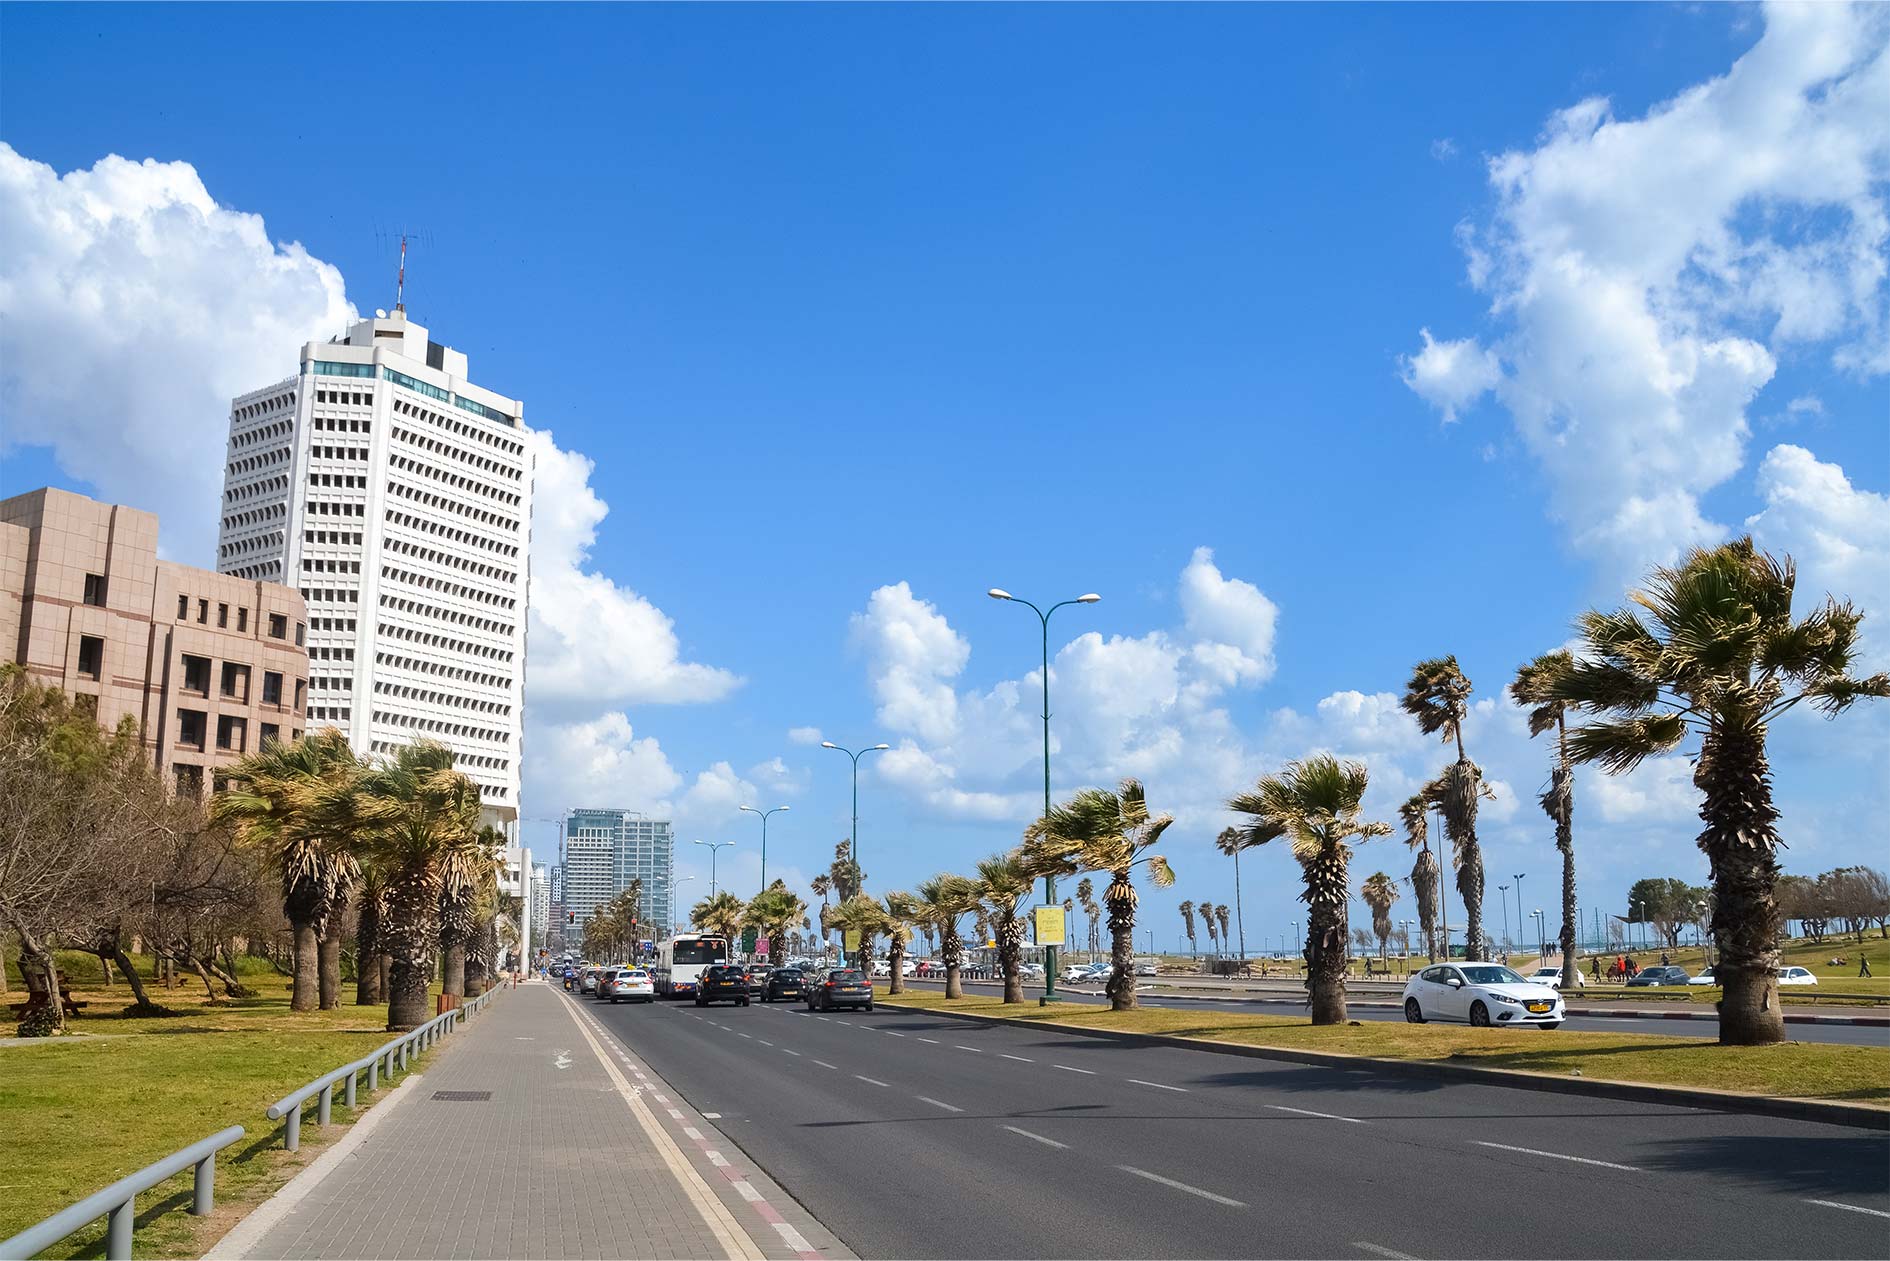 Road in Tel Aviv